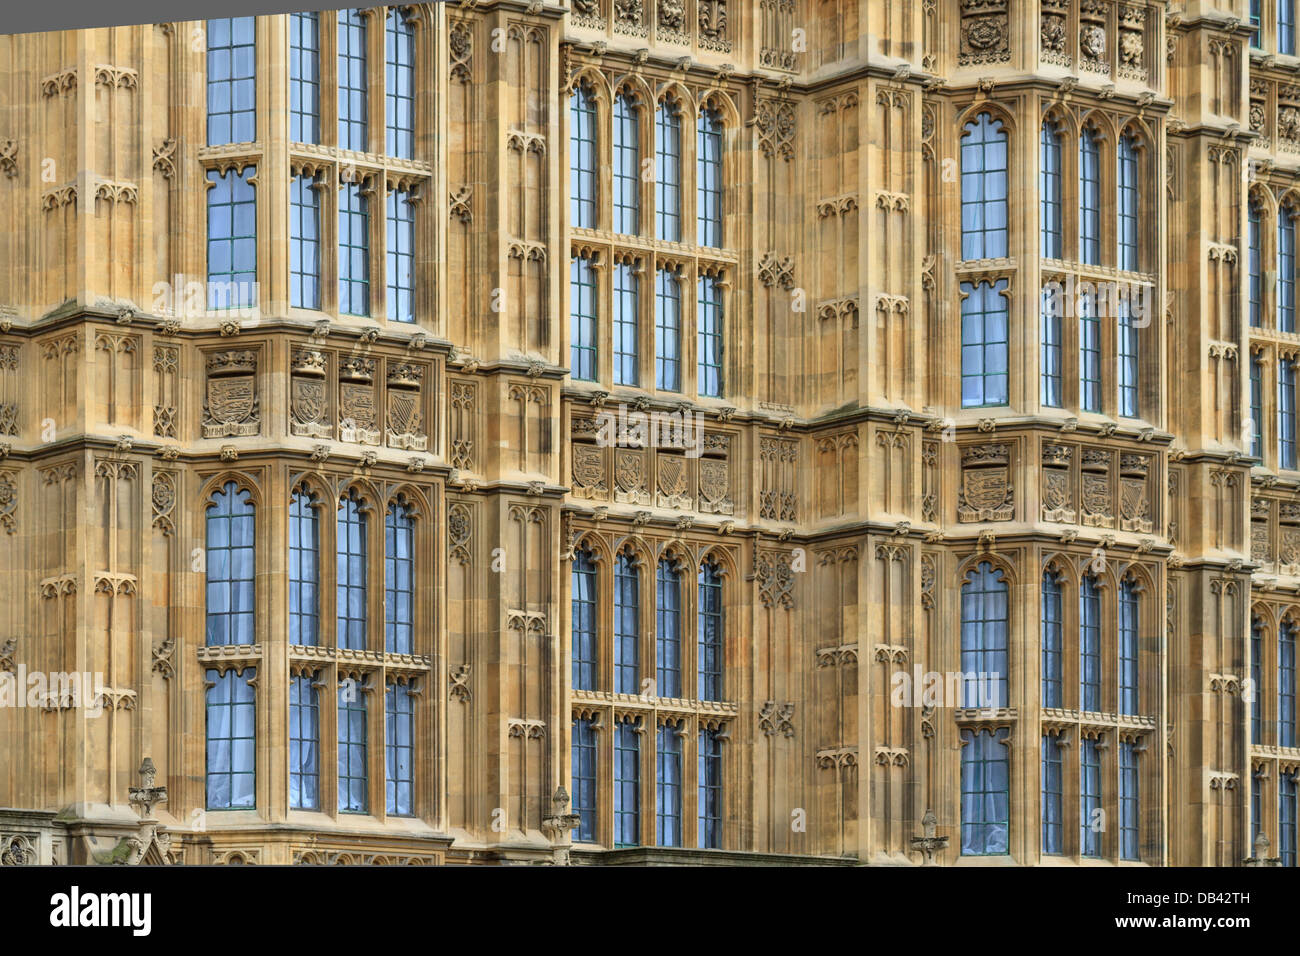 Chambres du Parlement détails façade (arrière-plan), London, UK Banque D'Images